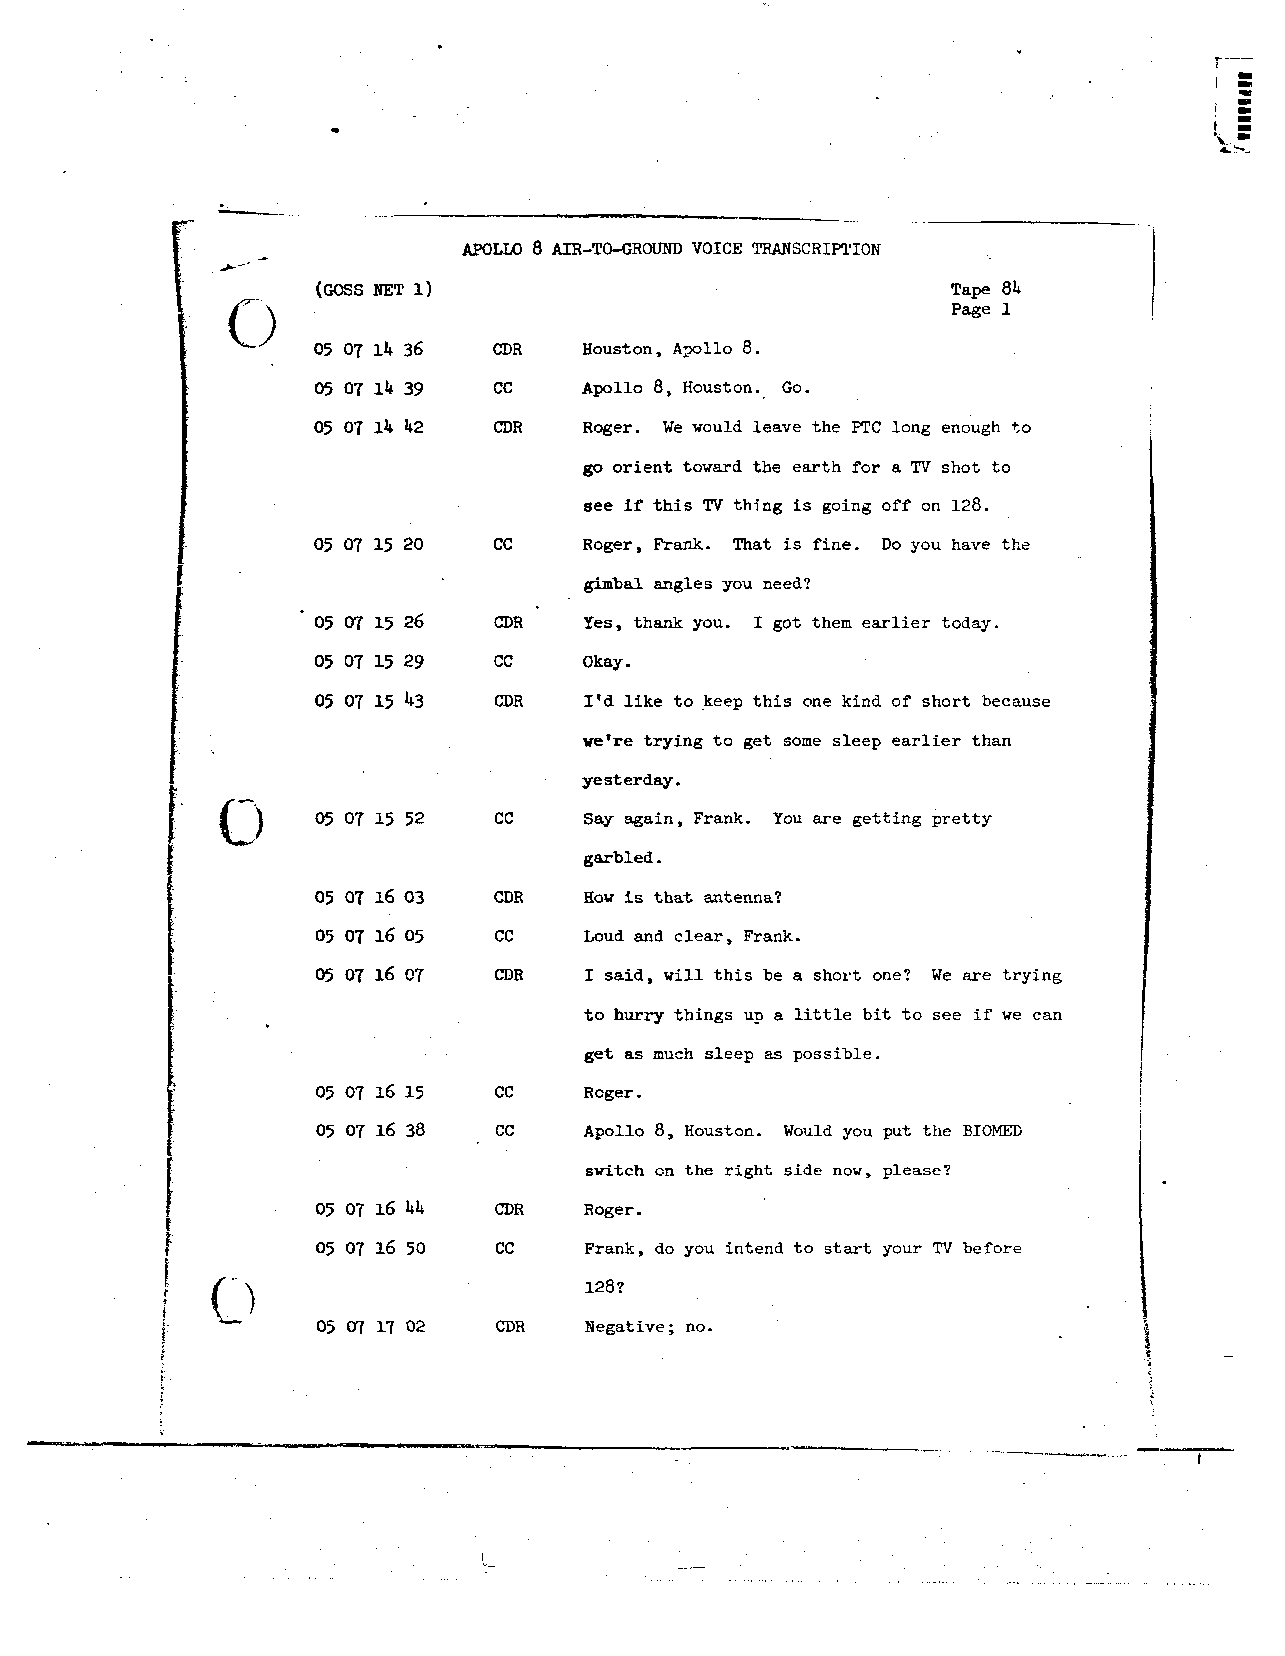 Page 687 of Apollo 8’s original transcript